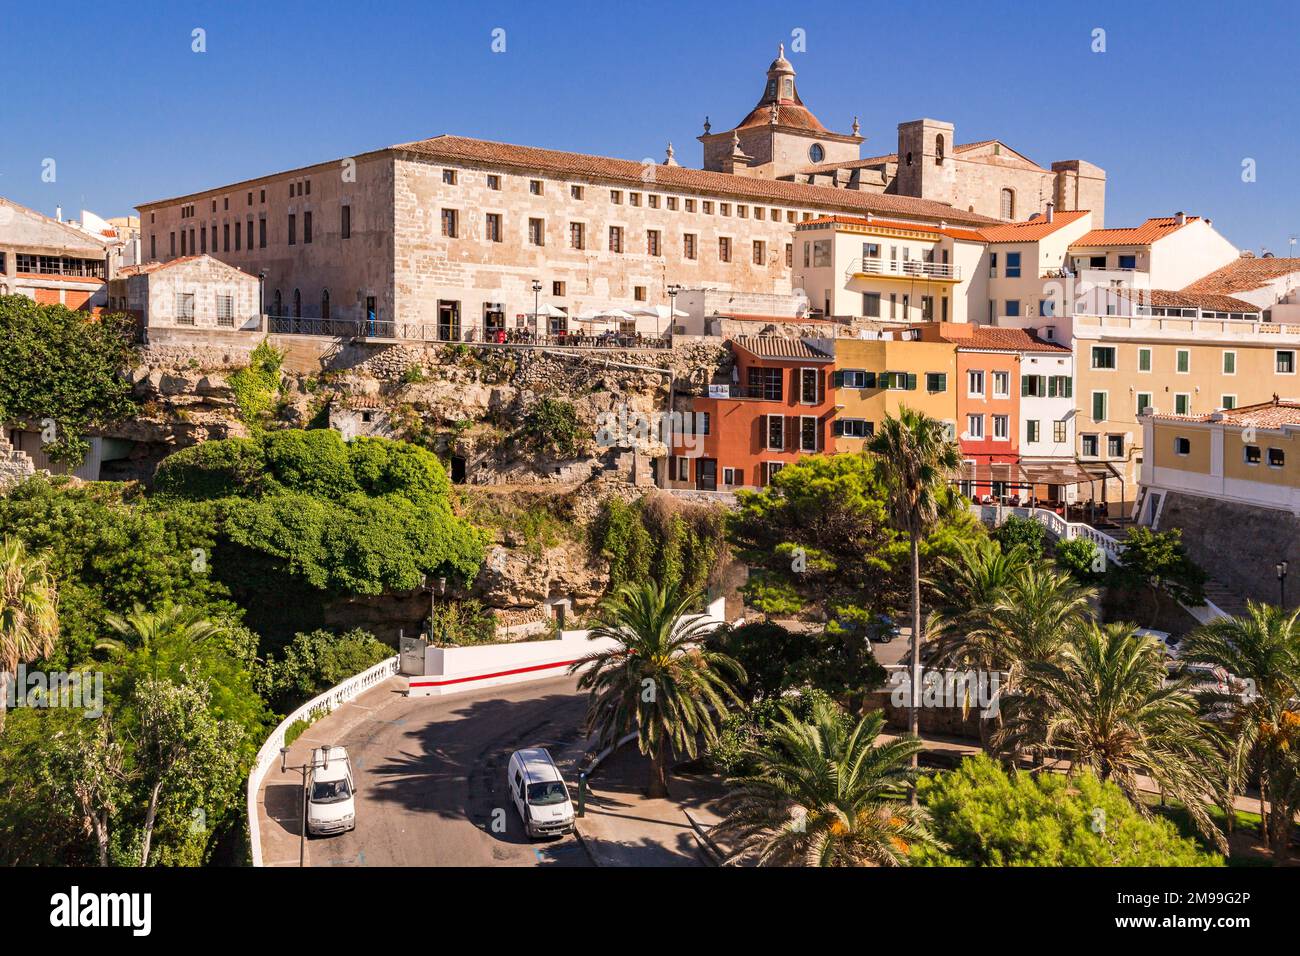 Farbenfrohe Aussicht auf die Altstadt am Plaza Espanya von Mao, Menorca, Balearen, Spanien Stockfoto